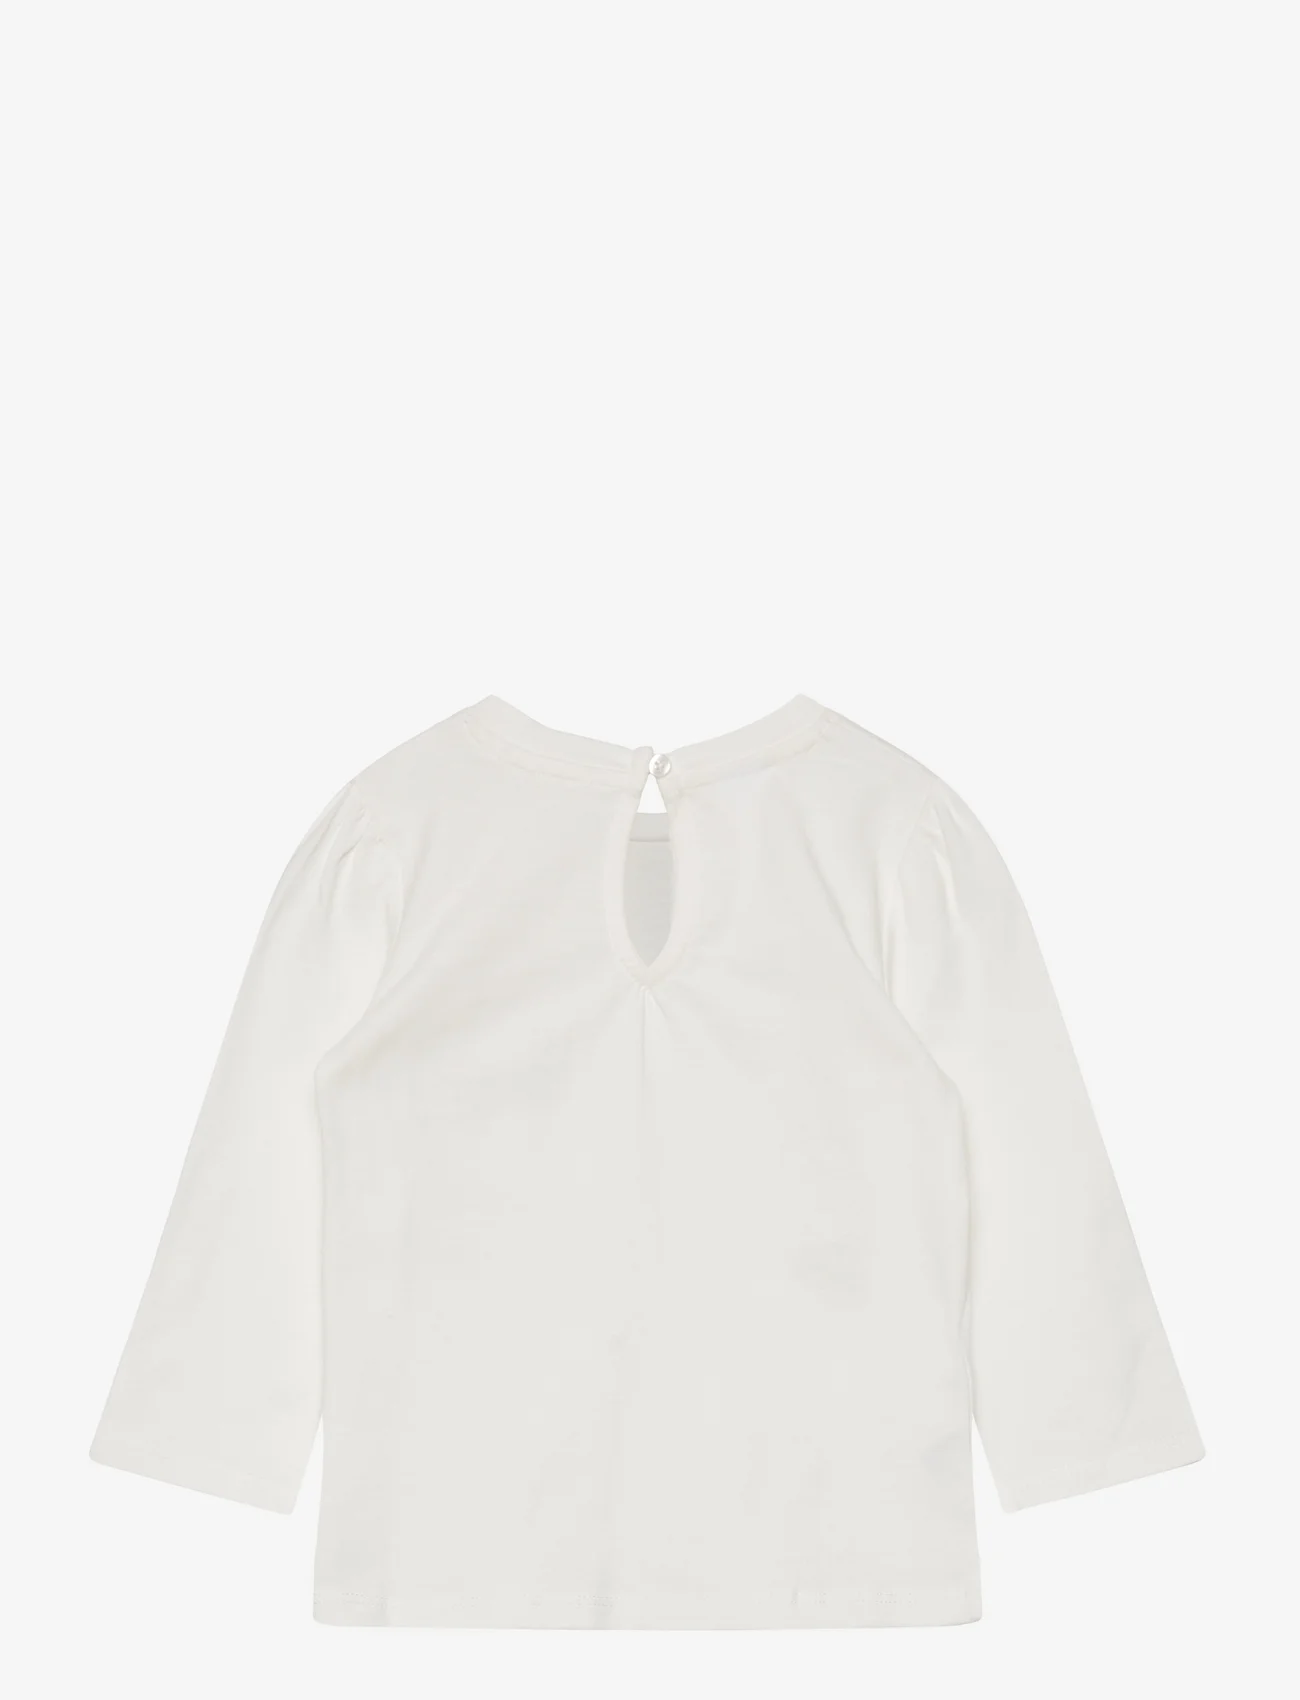 Mango - Printed long sleeve t-shirt - långärmade t-shirts - natural white - 1